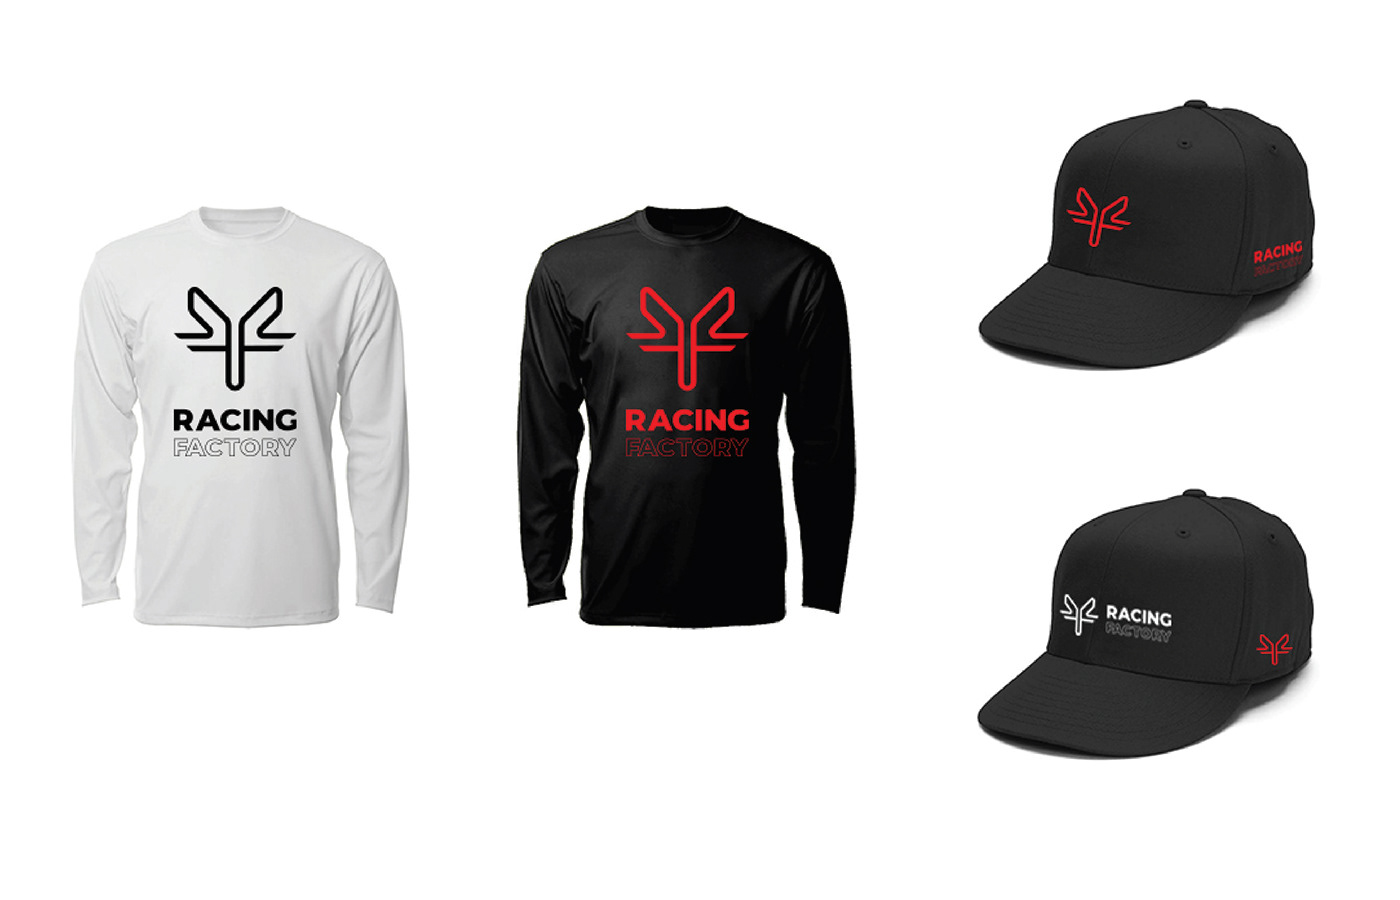 RACING FACTORY racing design Logo racing logo Racing Racing Team racing drivers TEAM RACERS KUWAIT TEAM KARTING TEAM